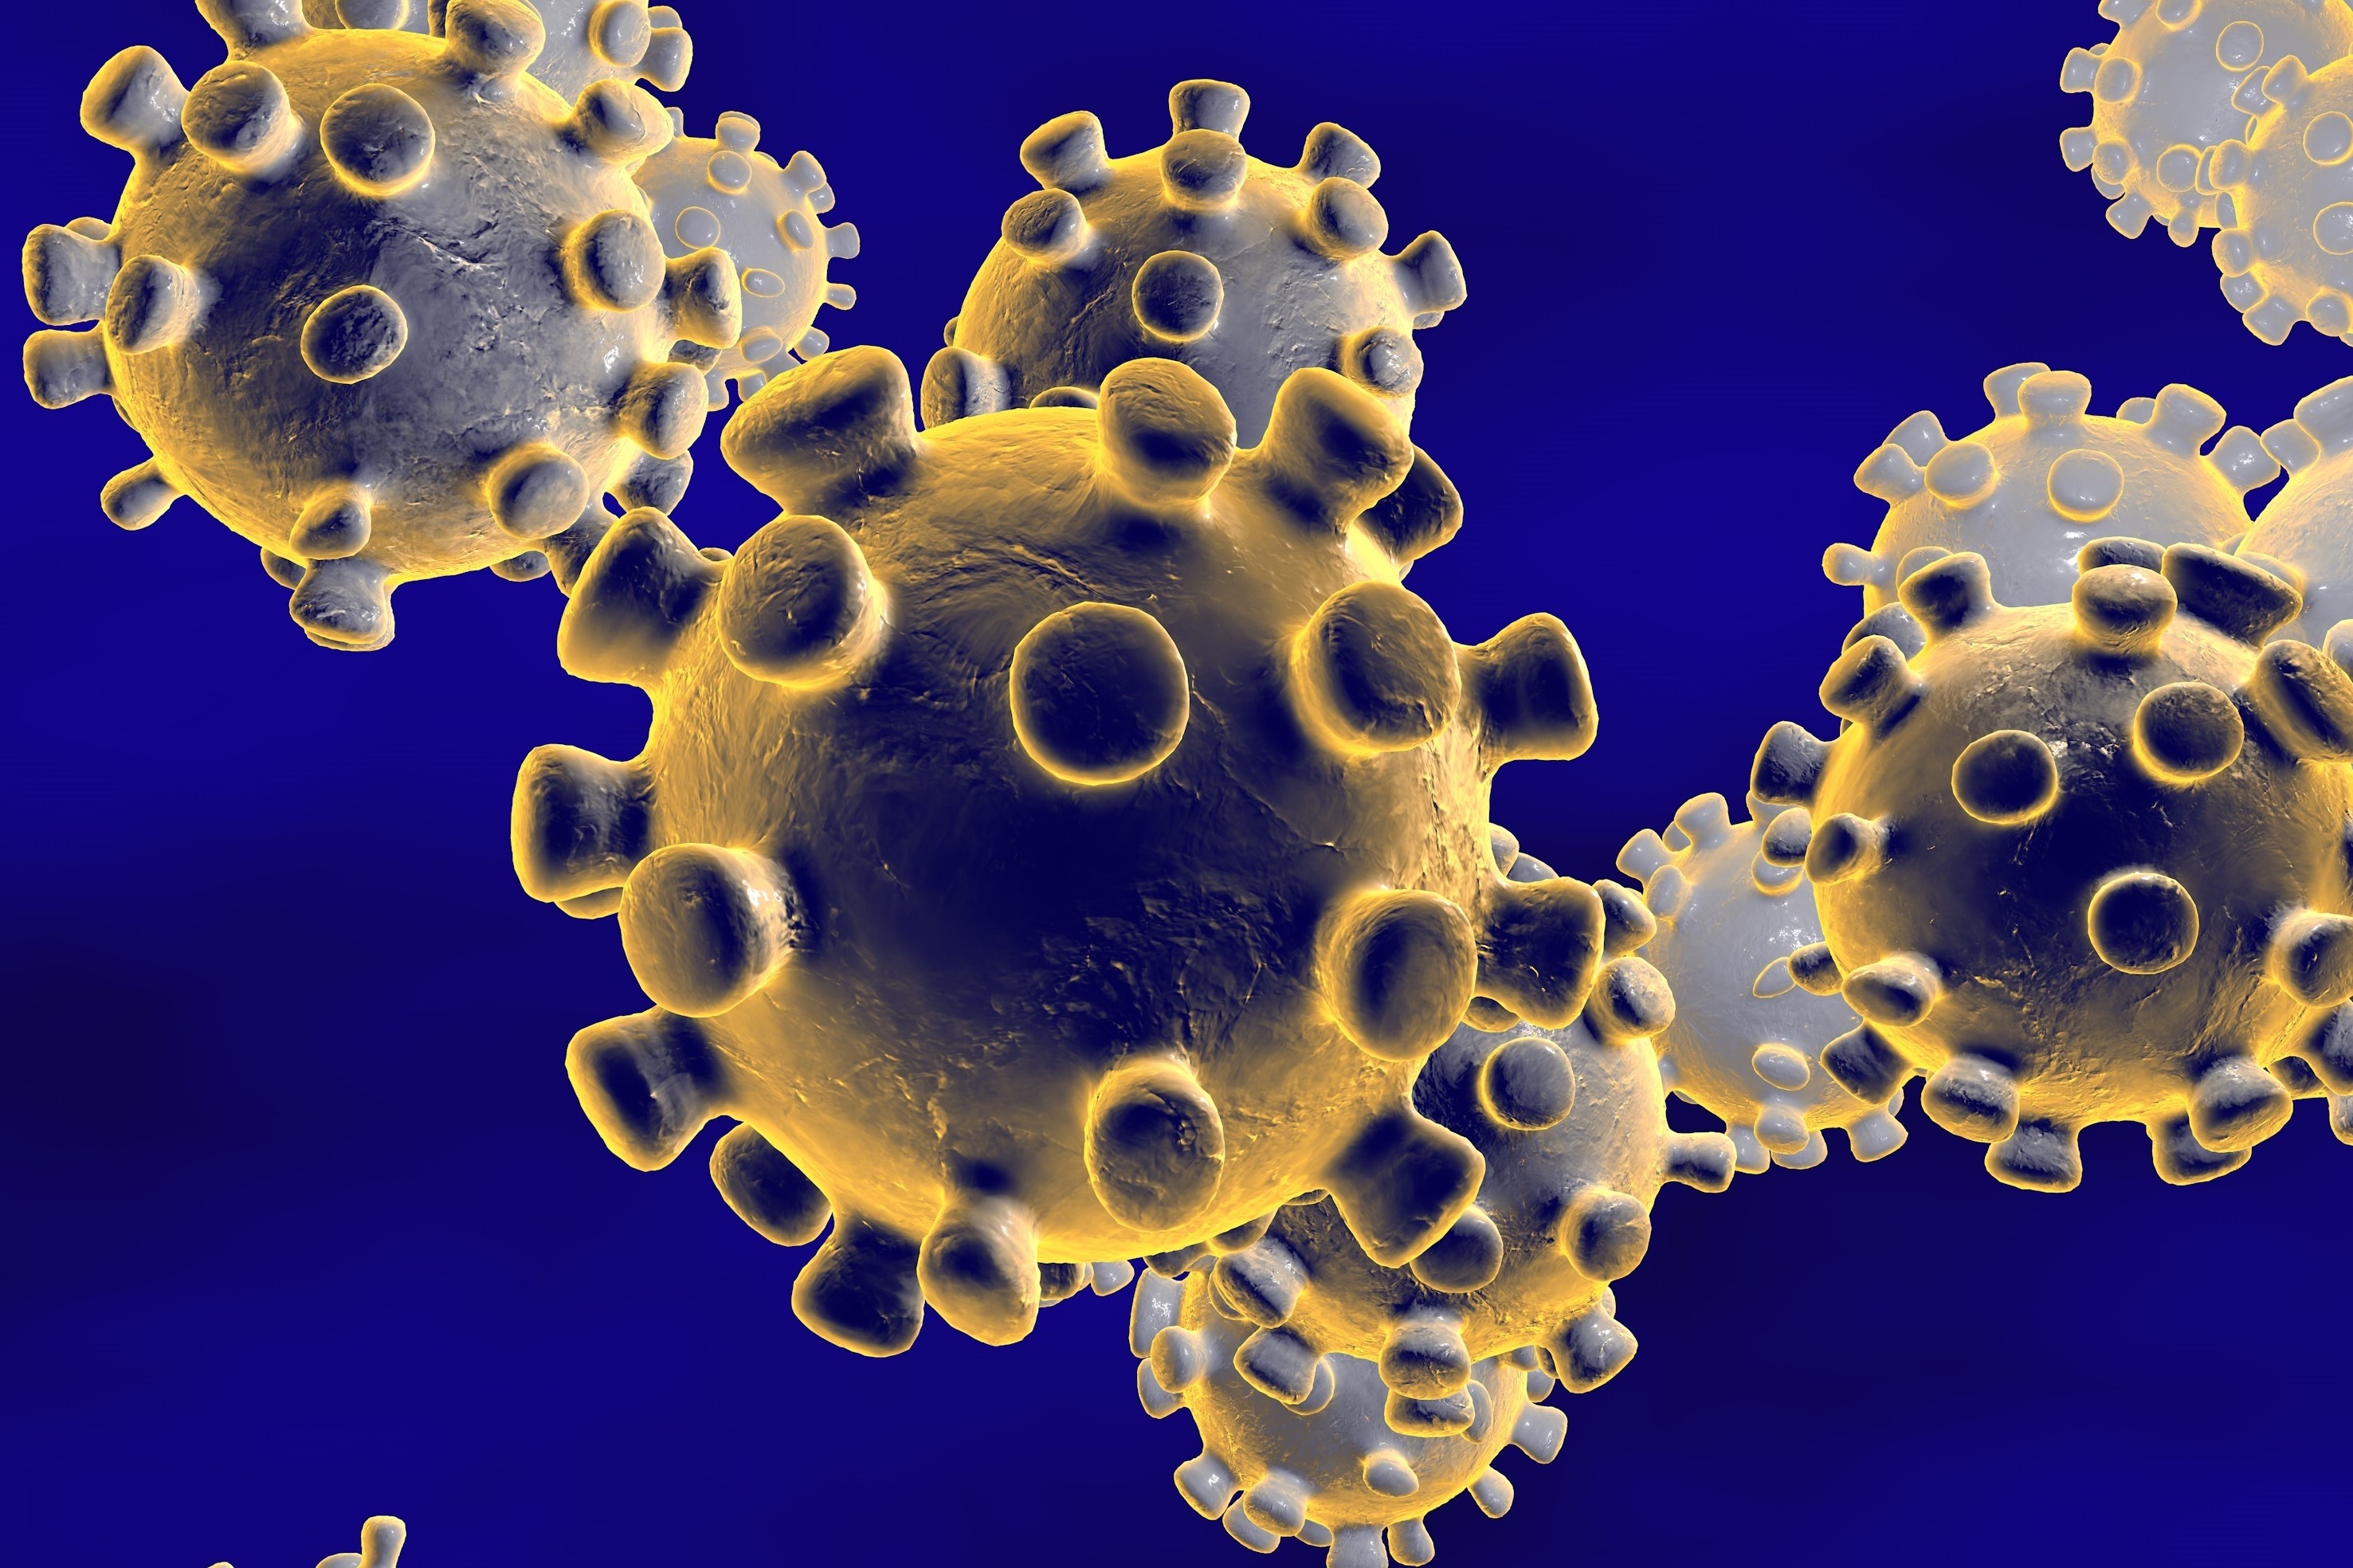 Los coronavirus (CoV) son una gran familia de virus que causan enfermedades respiratorias desde un resfriado común hasta enfermedades más graves.